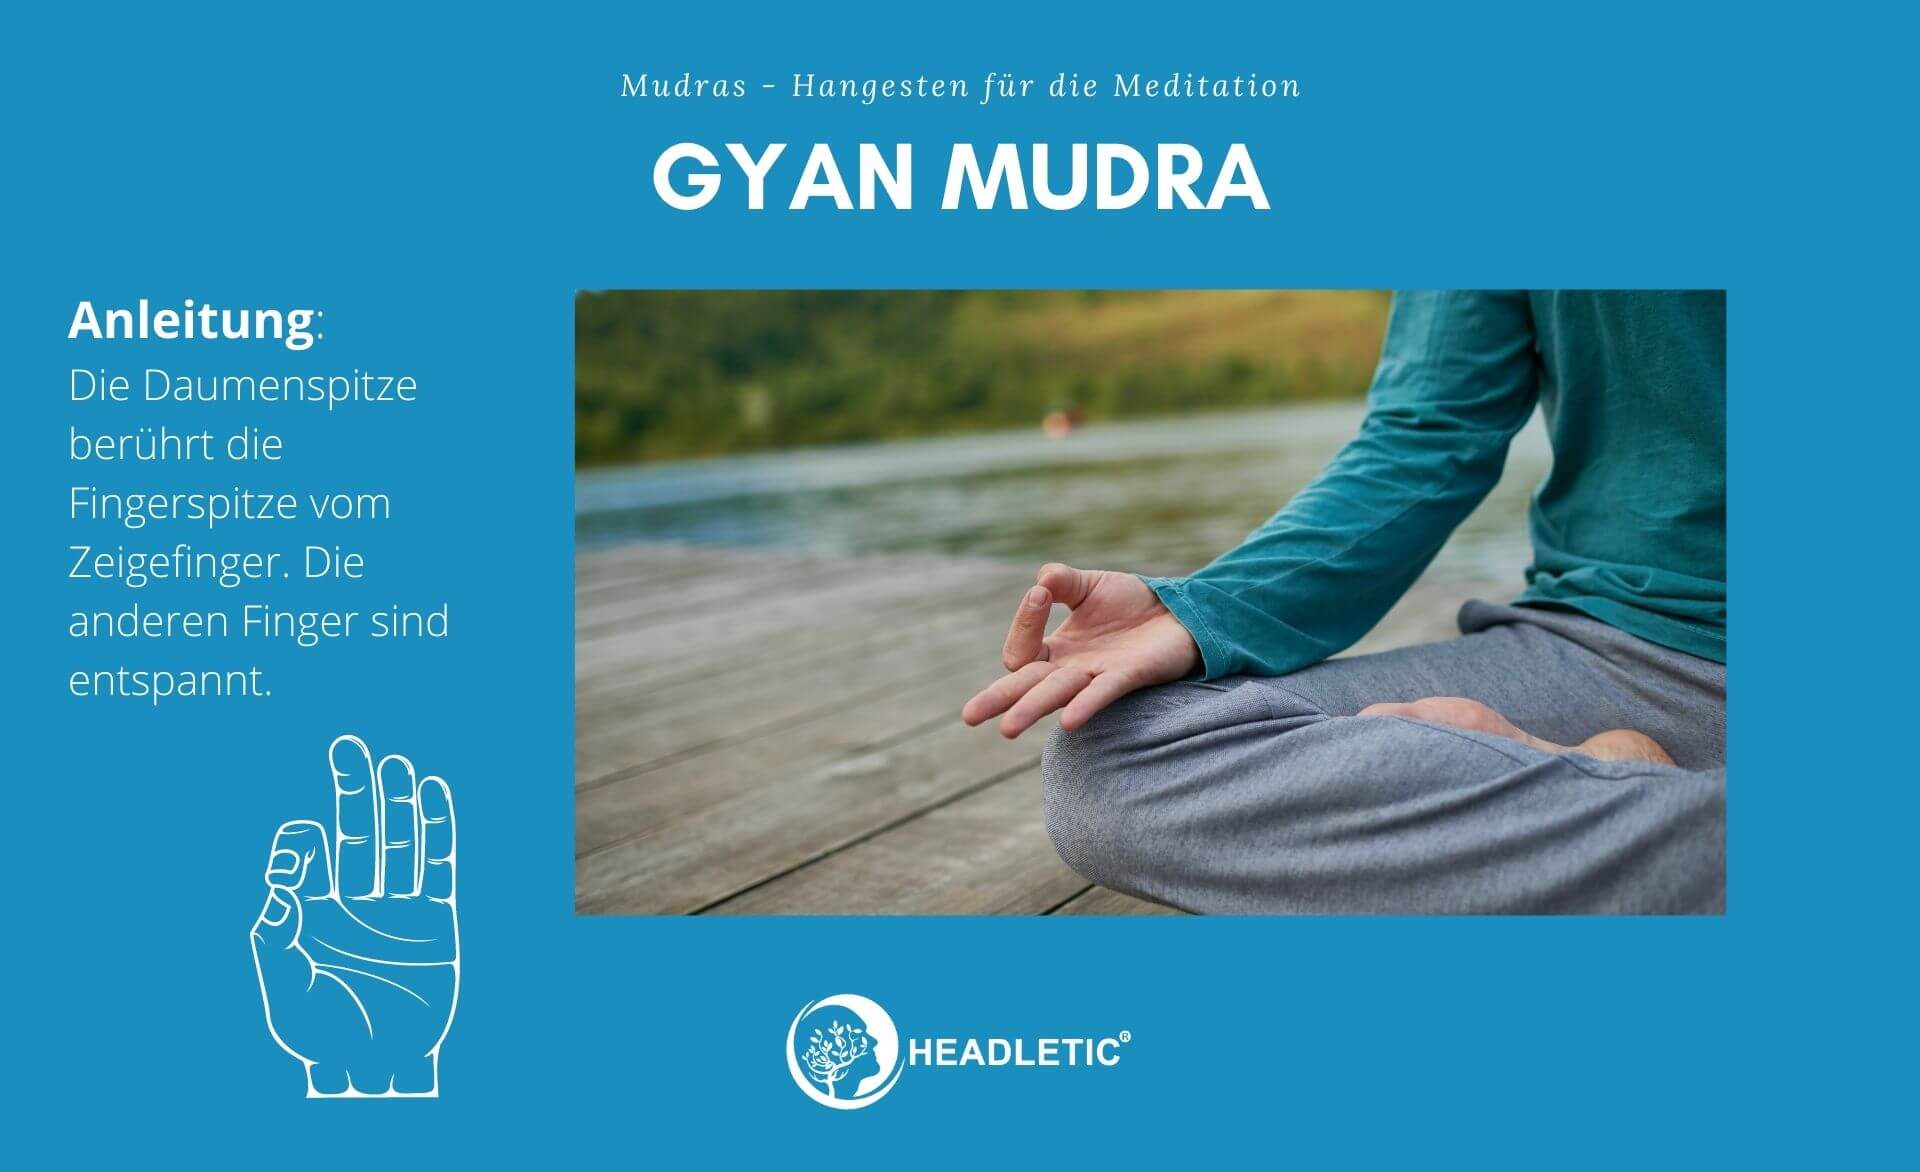 Gyan Mudra - Handgesten für die Meditation